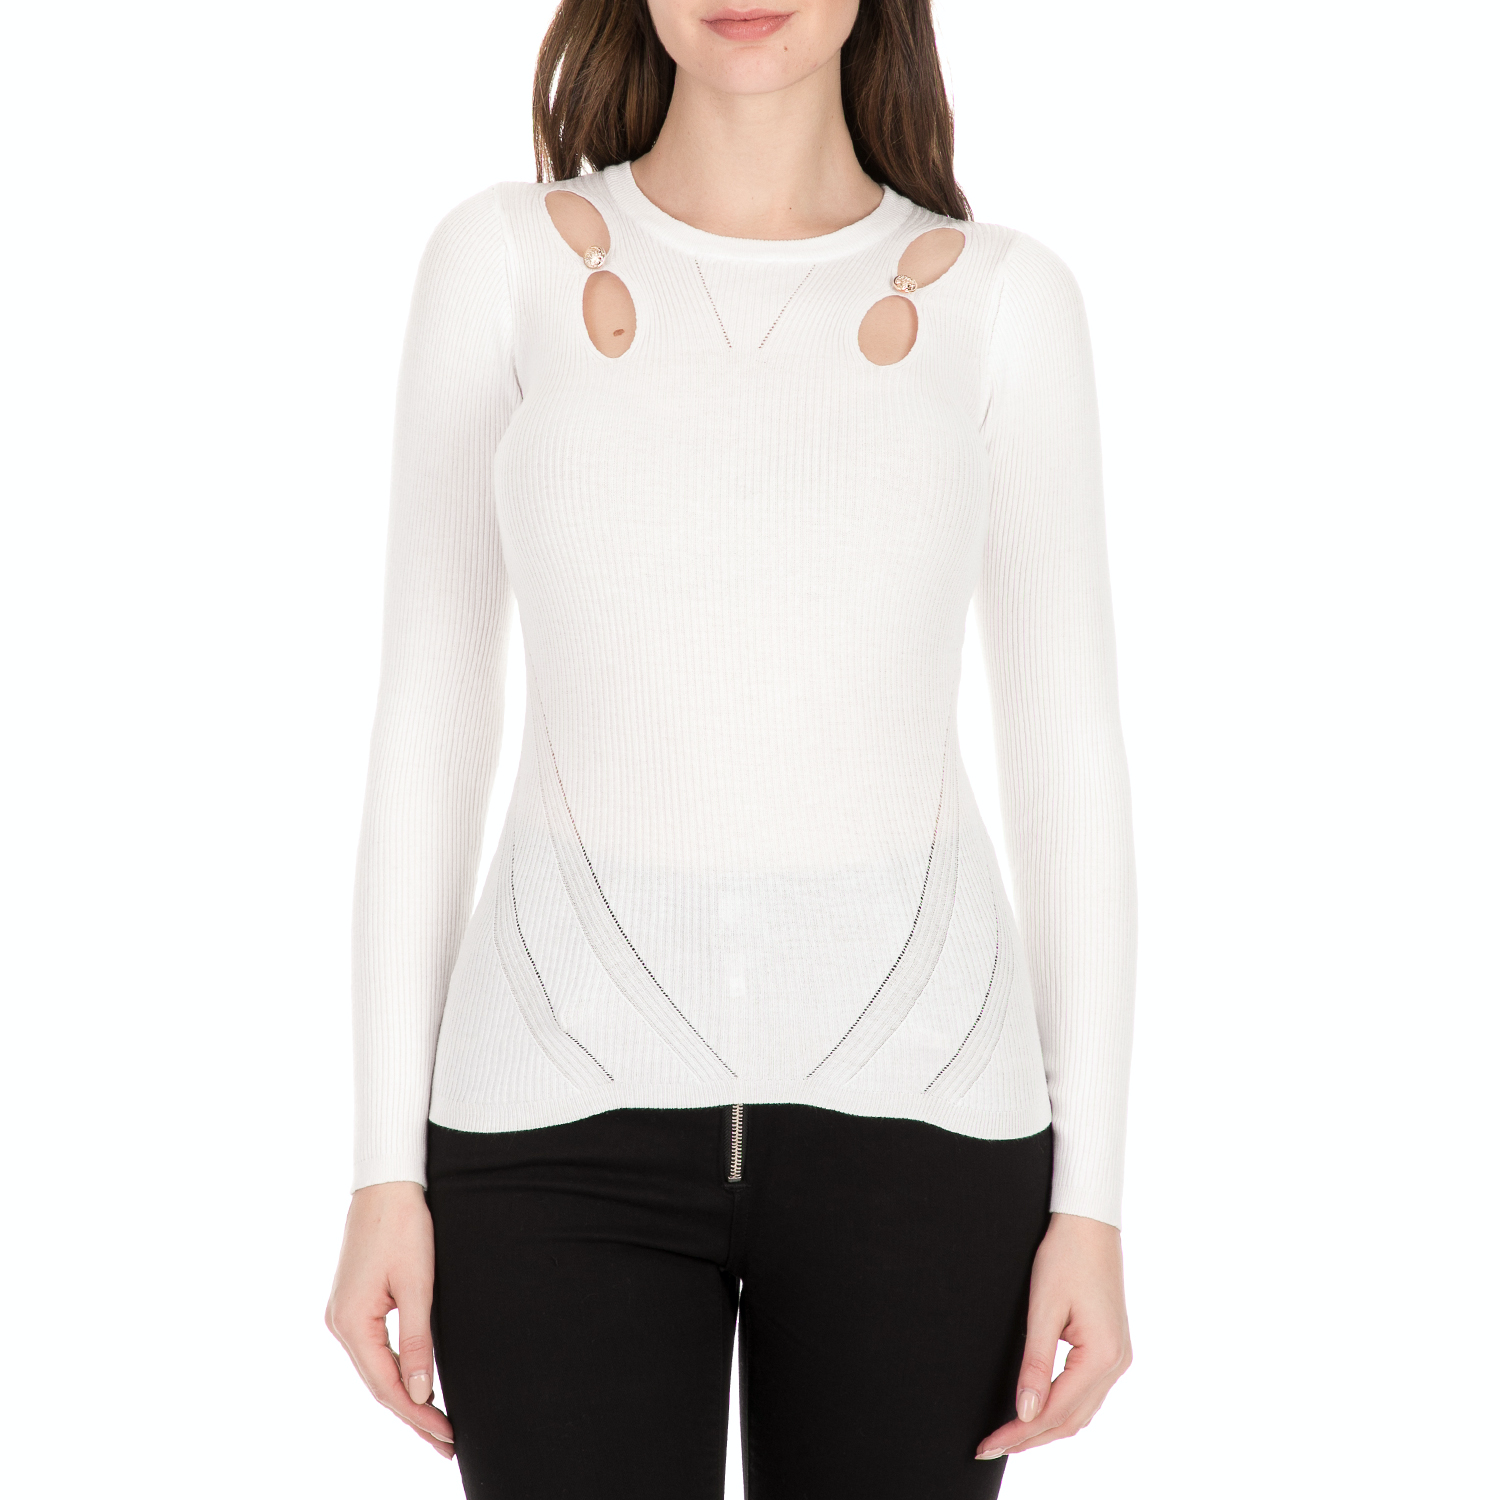 Γυναικεία/Ρούχα/Μπλούζες/Μακρυμάνικες GUESS - Γυναικείο πουλόβερ GUESS BRENDA λευκό